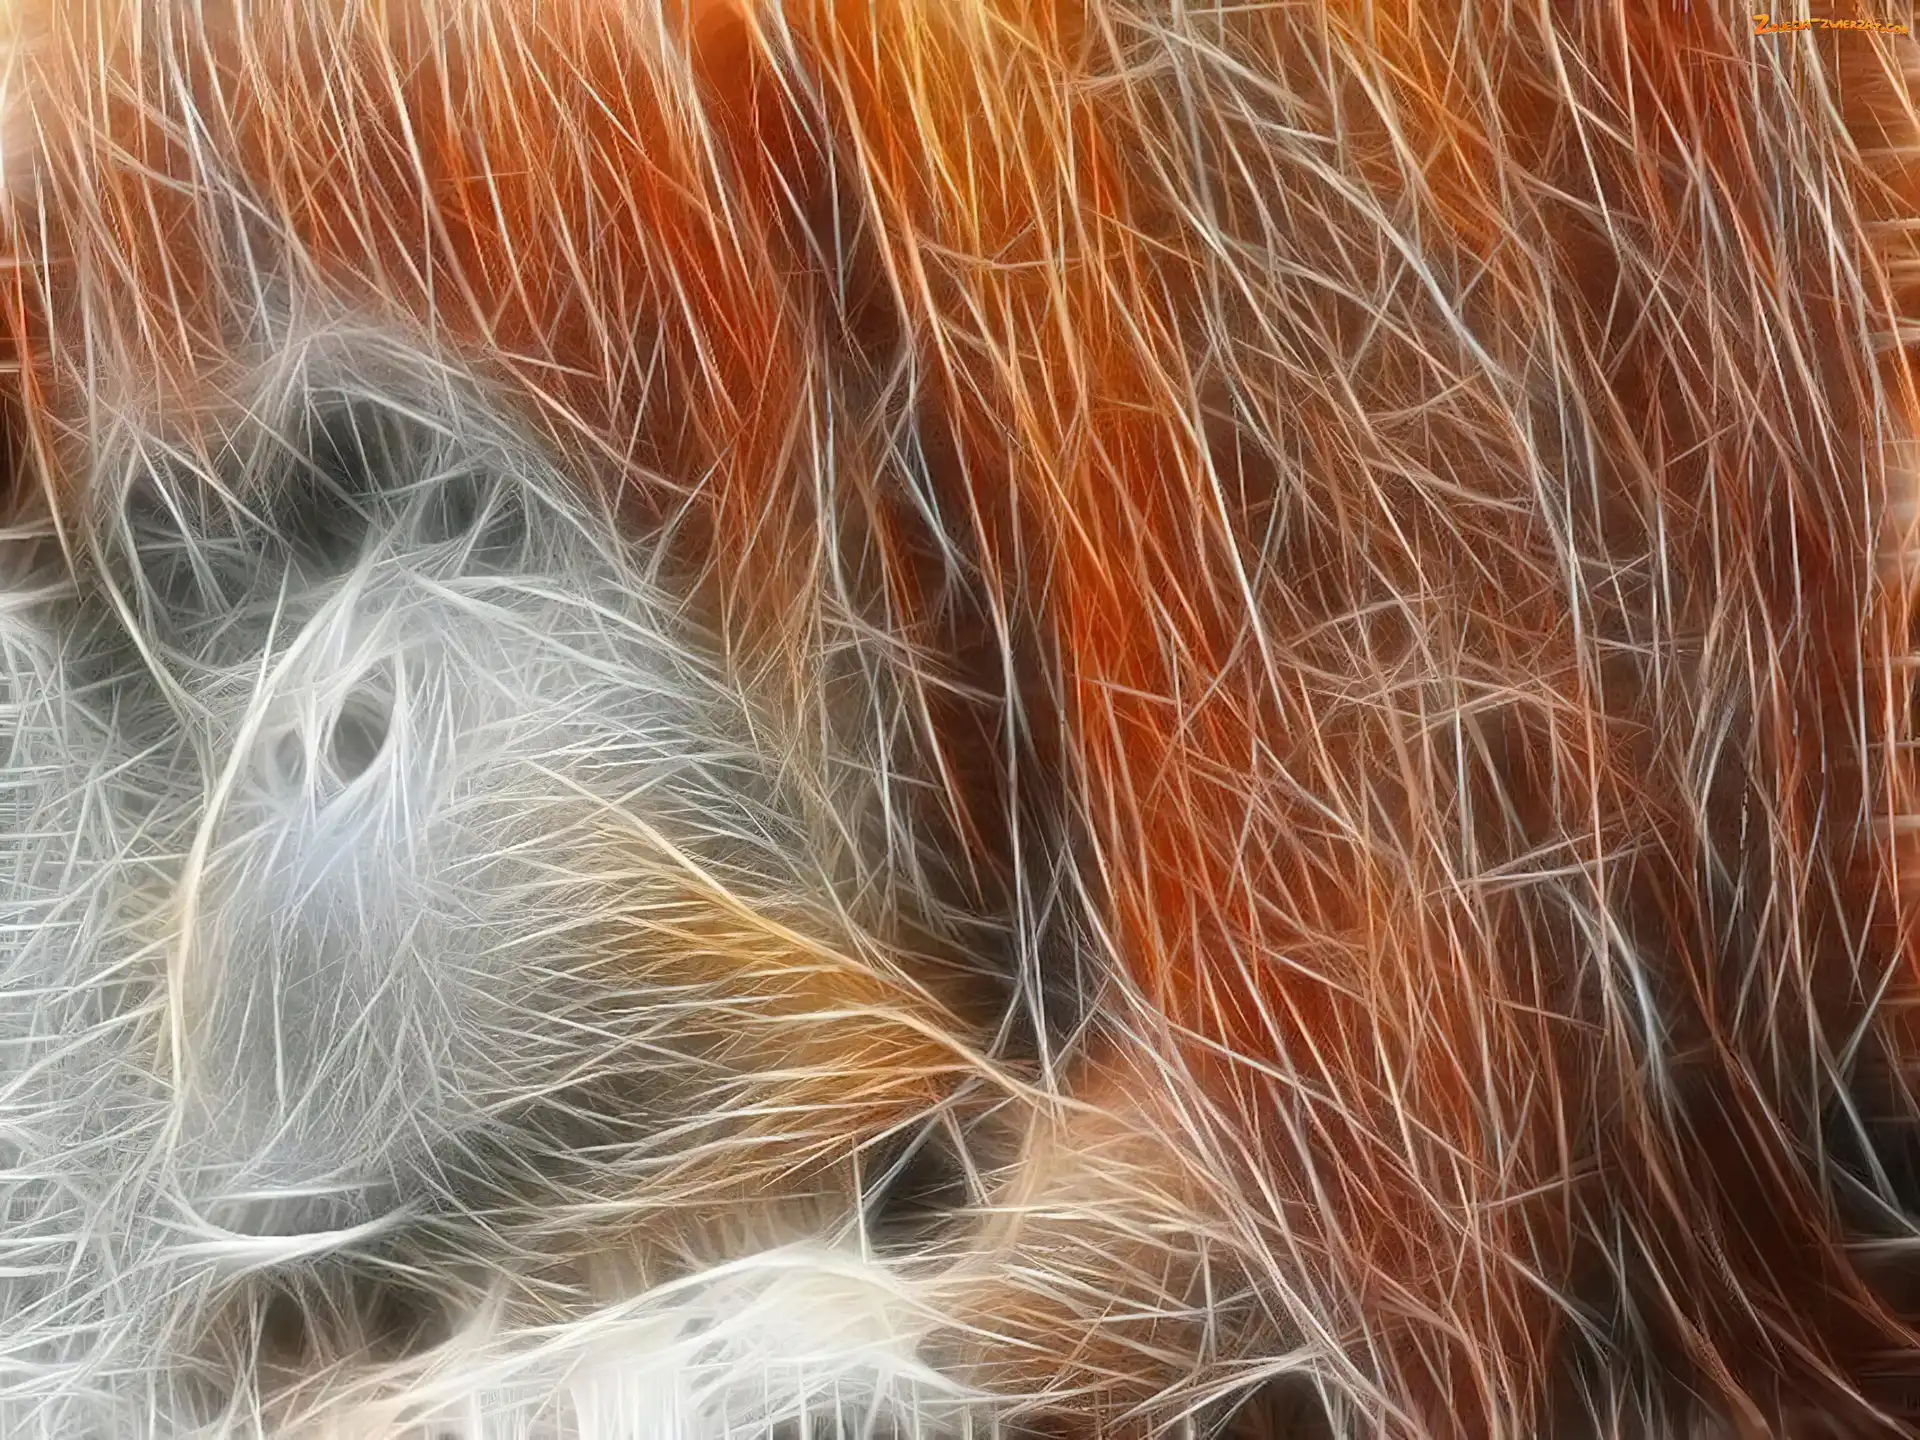 Grafika, Rudy, Orangutan